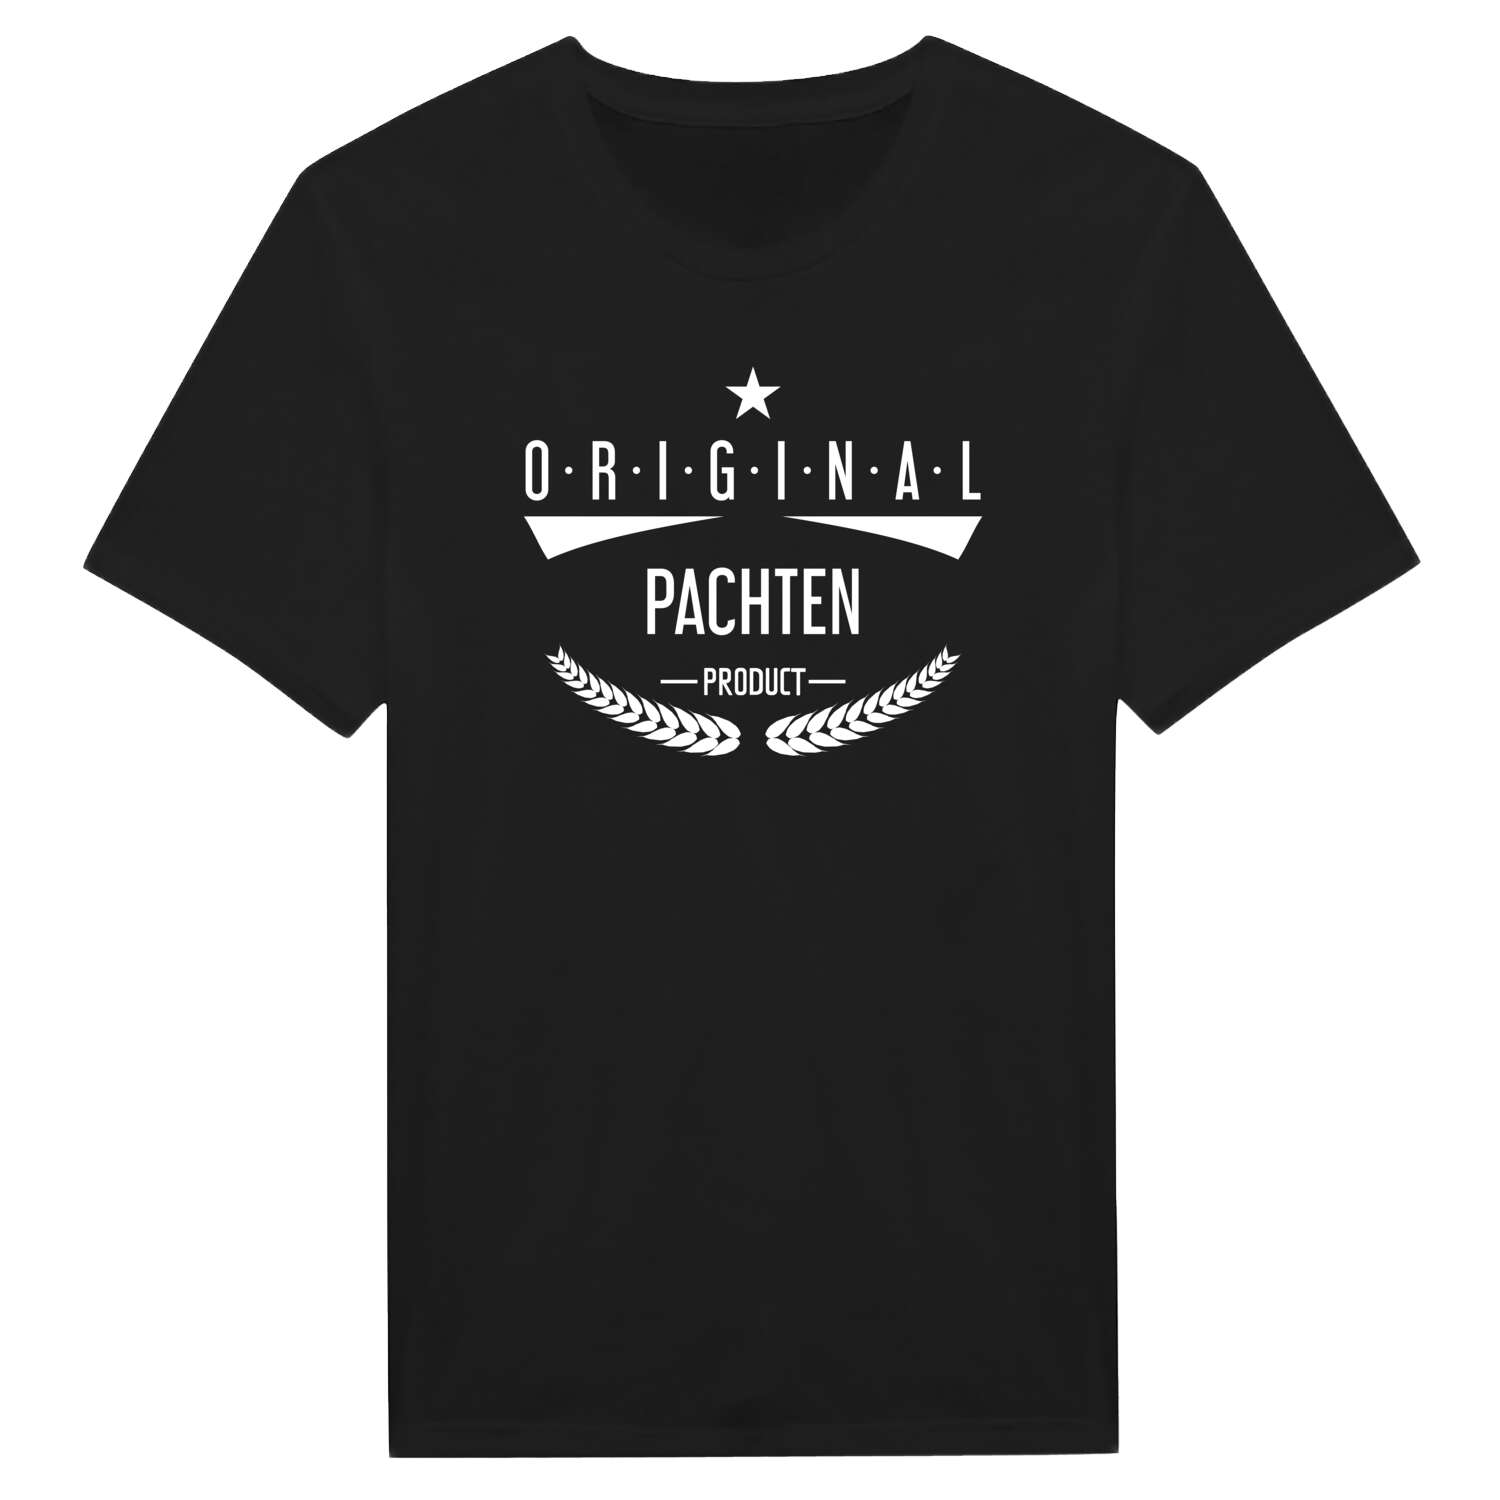 Pachten T-Shirt »Original Product«